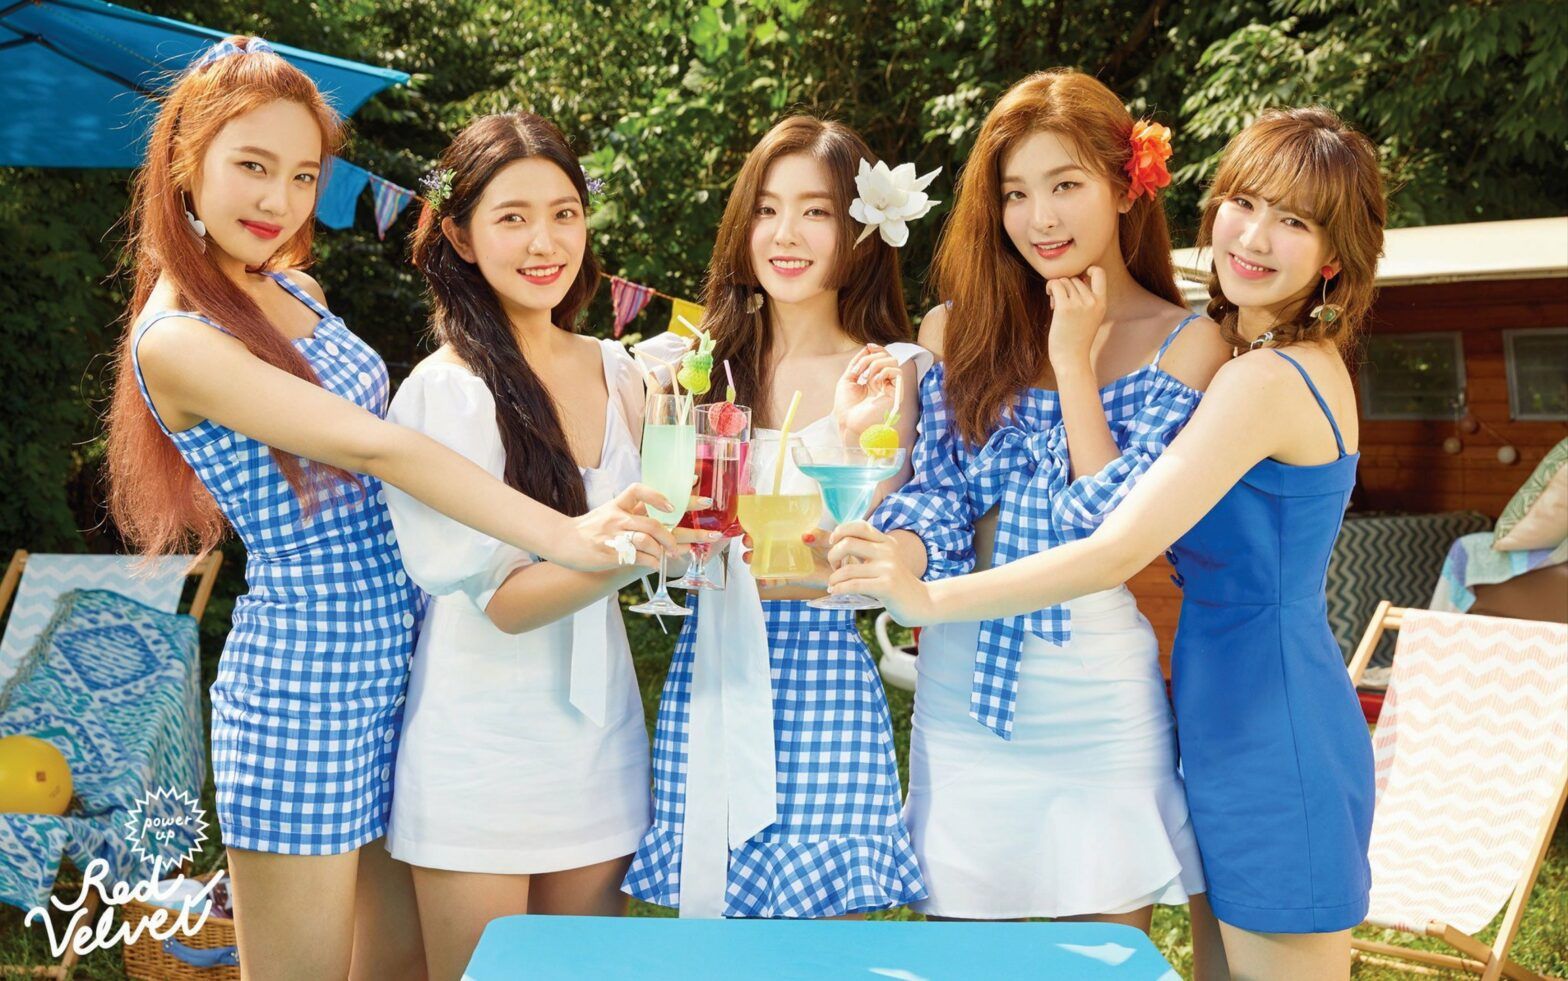 1. Red Velvet's Irene - wide 2